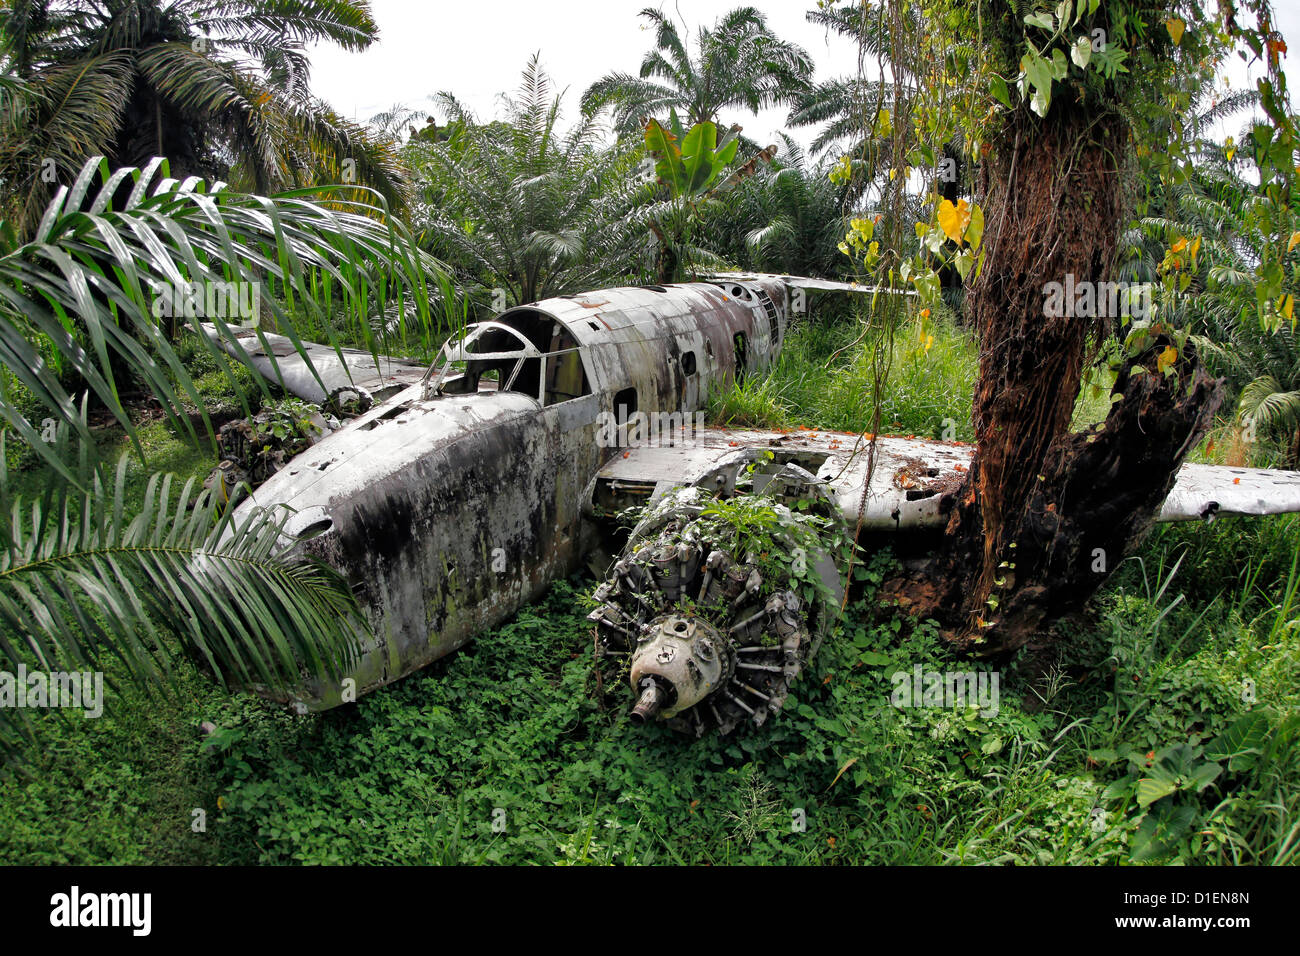 La nouvelle zelande plane wreck à partir de la seconde guerre mondiale près de Walindi Resort, Papouasie Nouvelle Guinée Banque D'Images